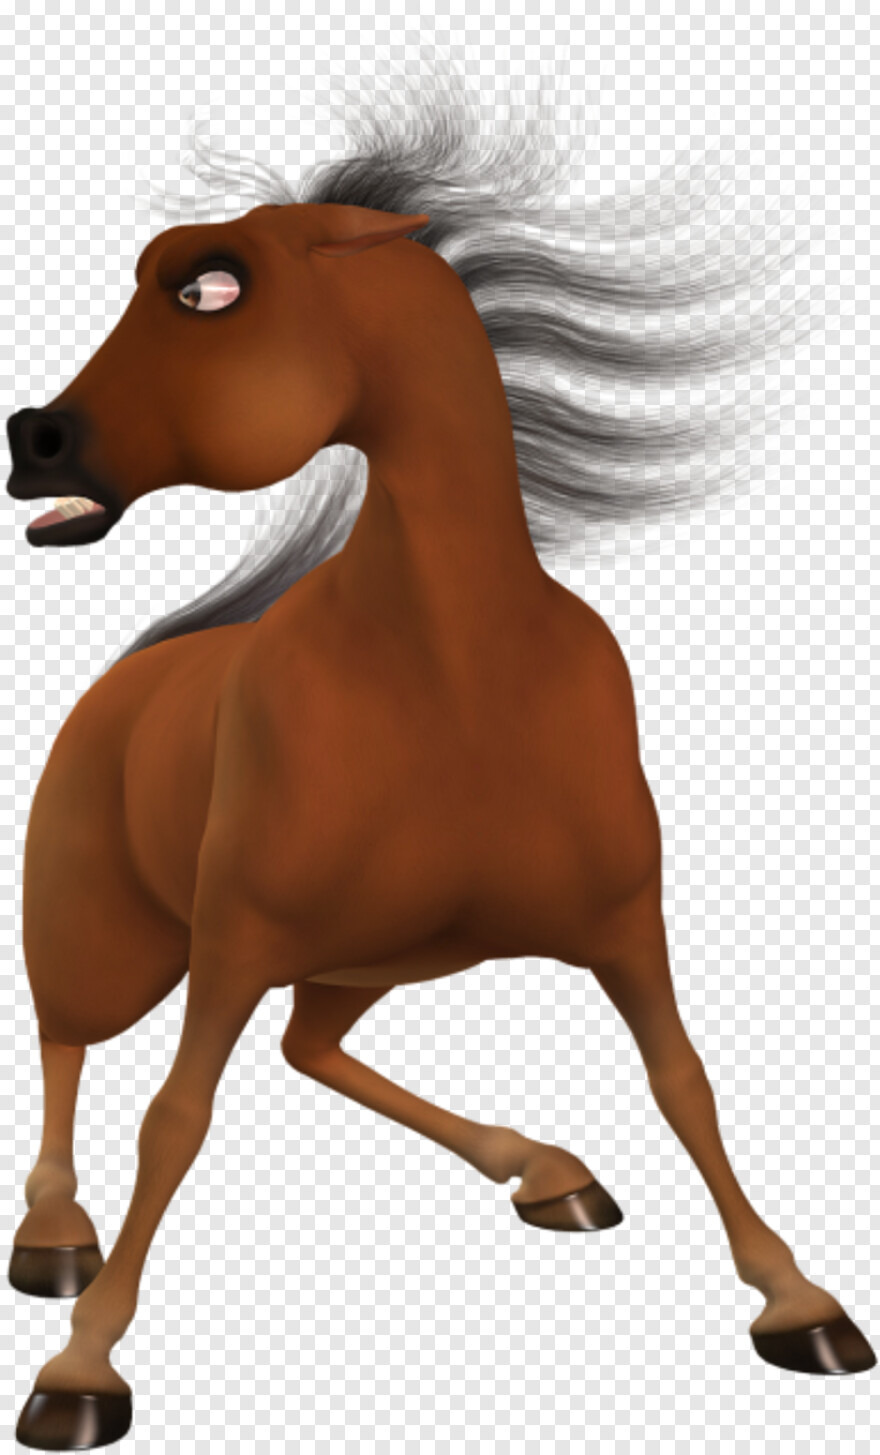  White Horse, Horse Logo, Black Horse, Horse, Horse Head, Horse Mask